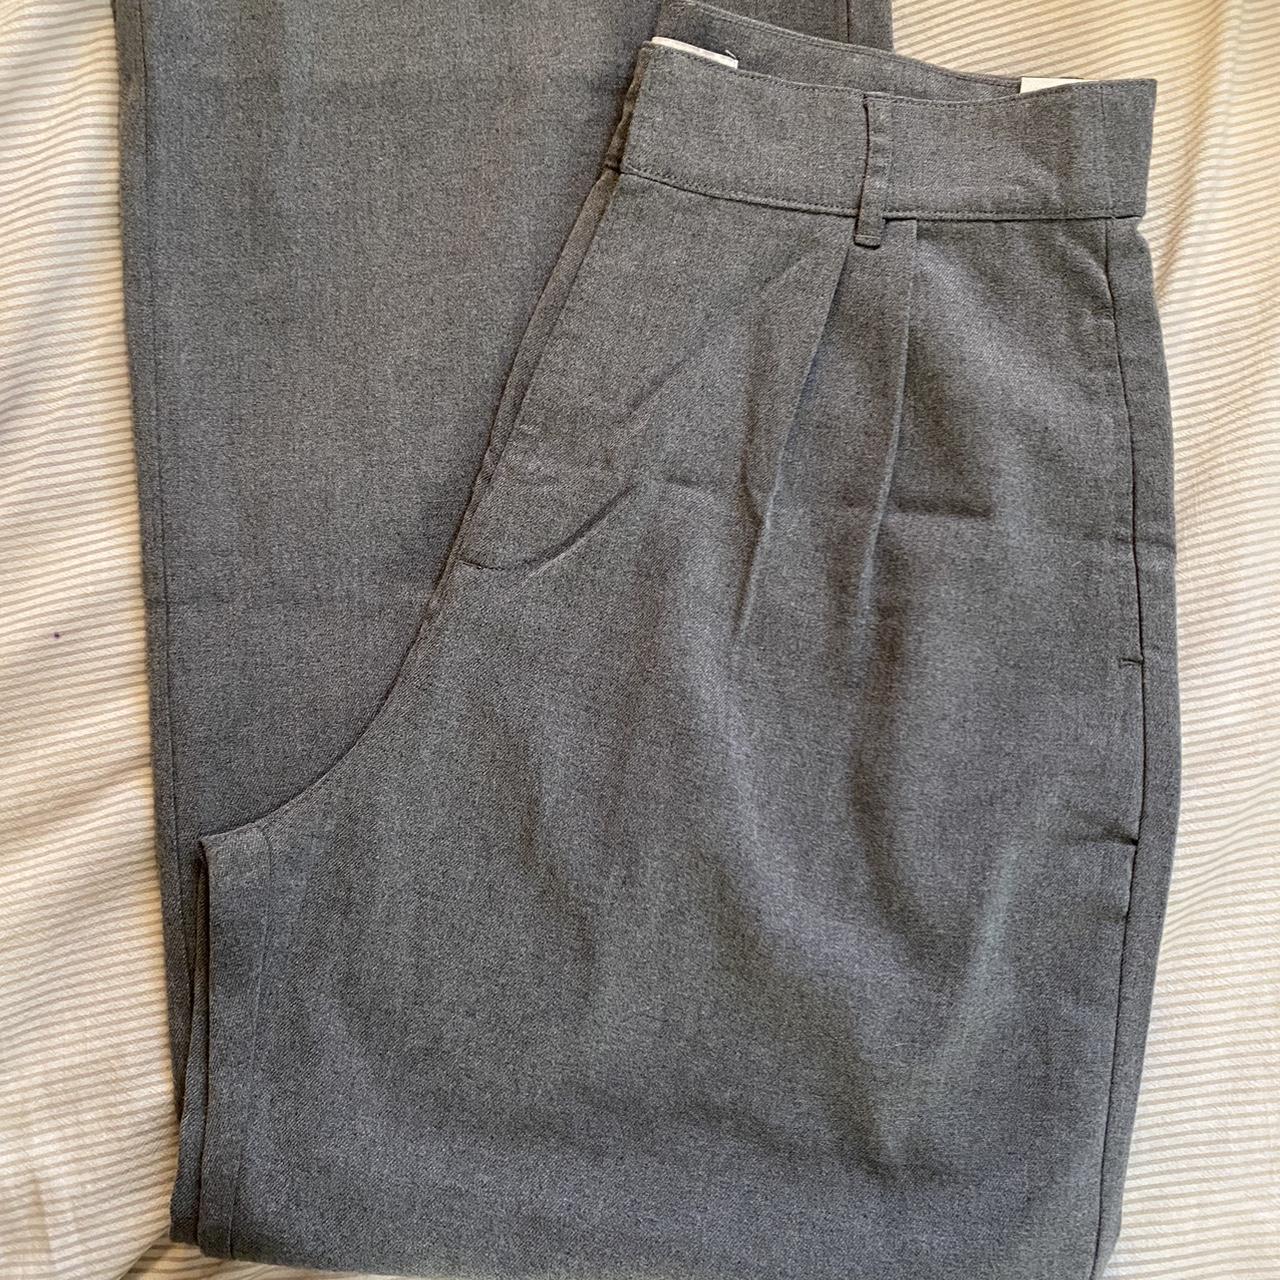 Abercrombie & Fitch Women's Grey Trousers | Depop